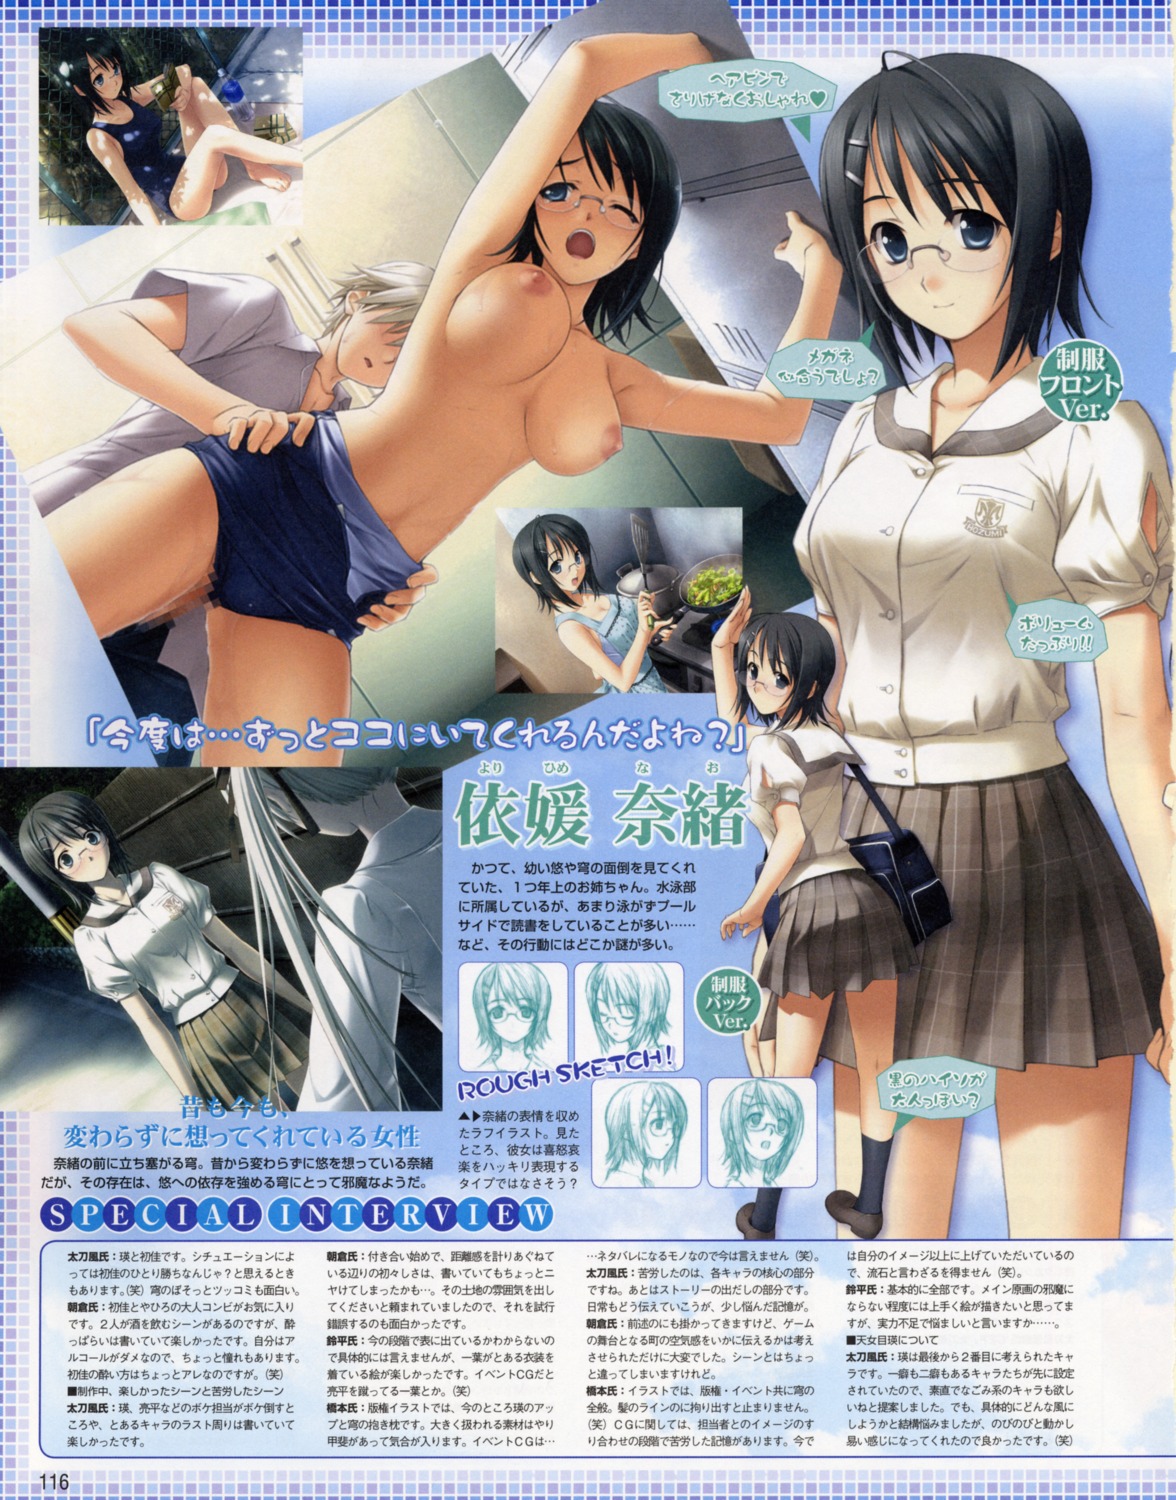 censored hashimoto_takashi megane seifuku sex sphere swimsuits topless yorihime_nao yosuga_no_sora